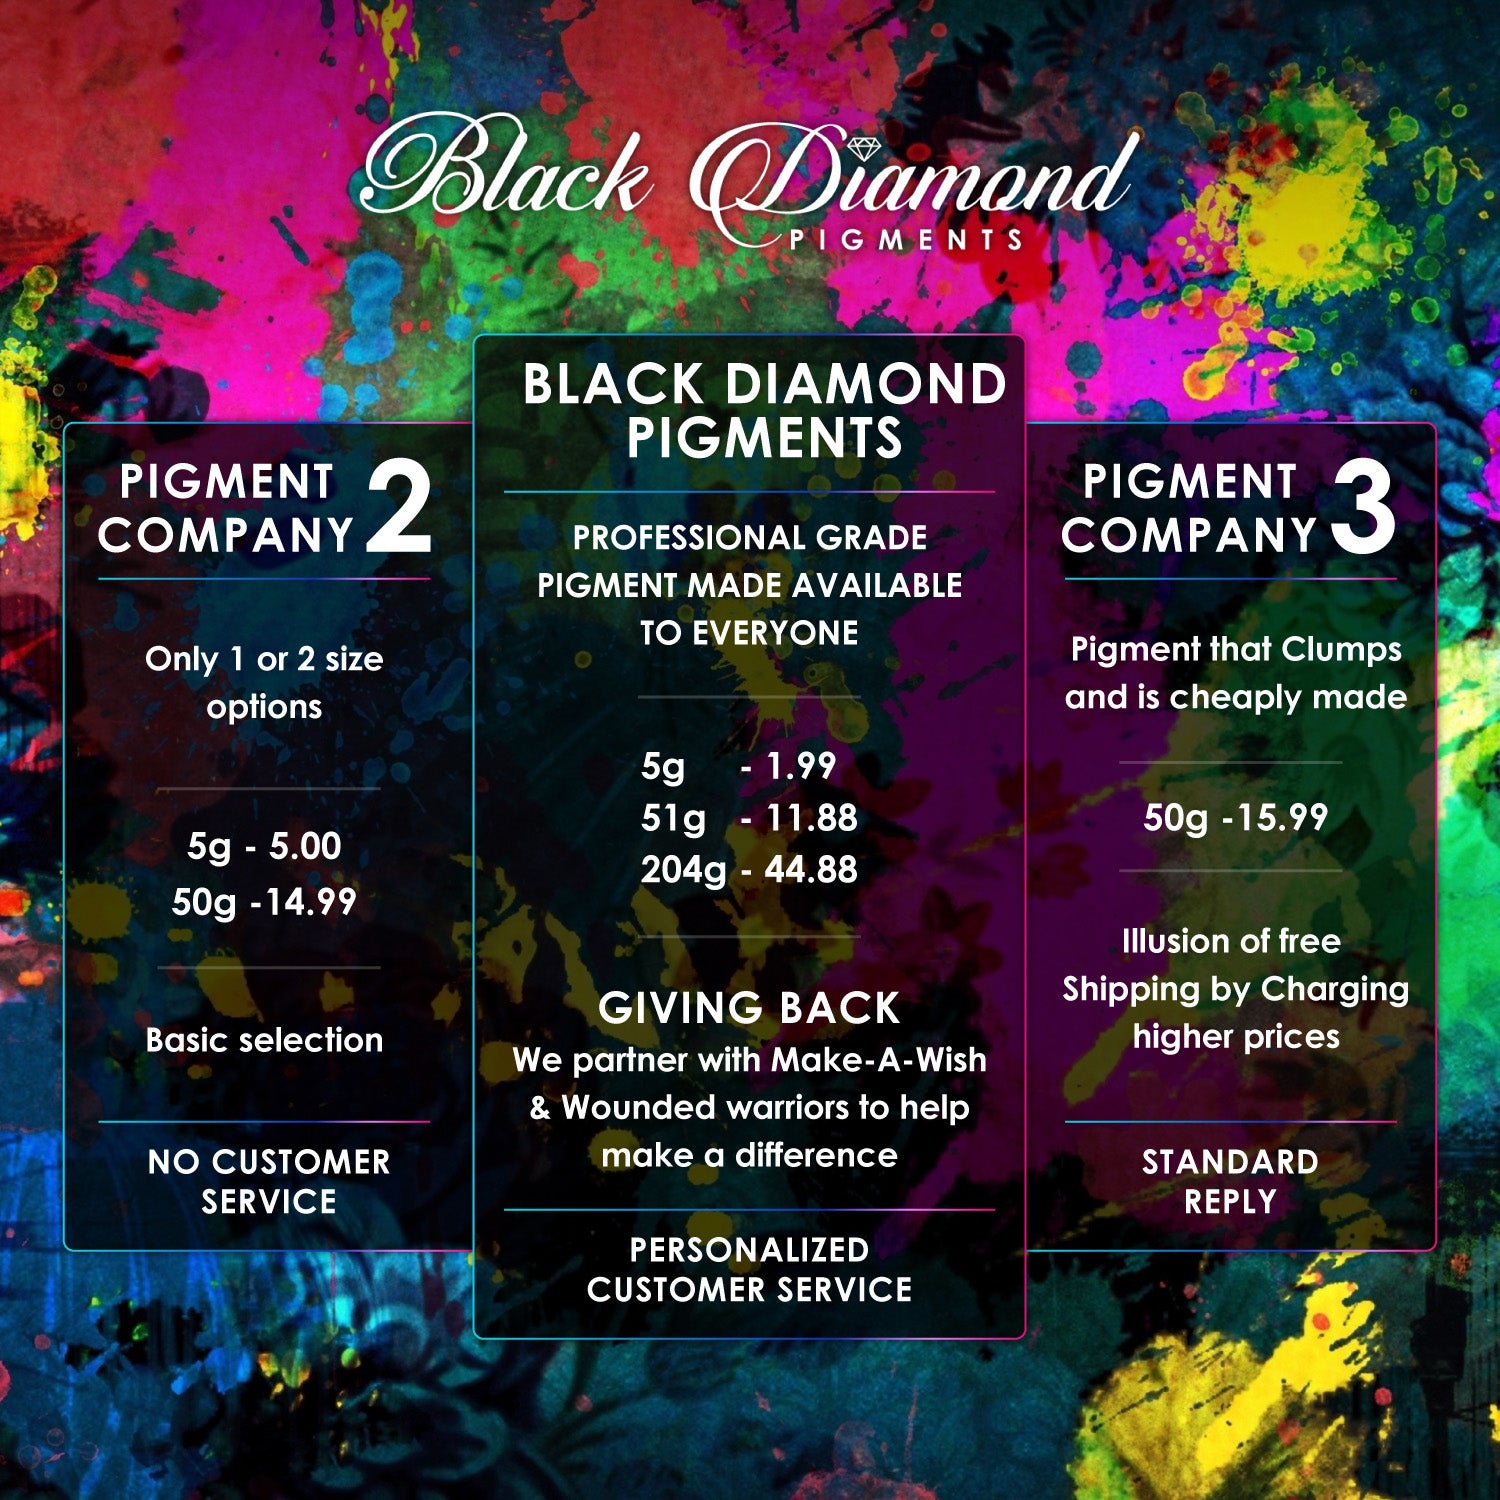 "OLIVE YELLOW" Black Diamond Pigments